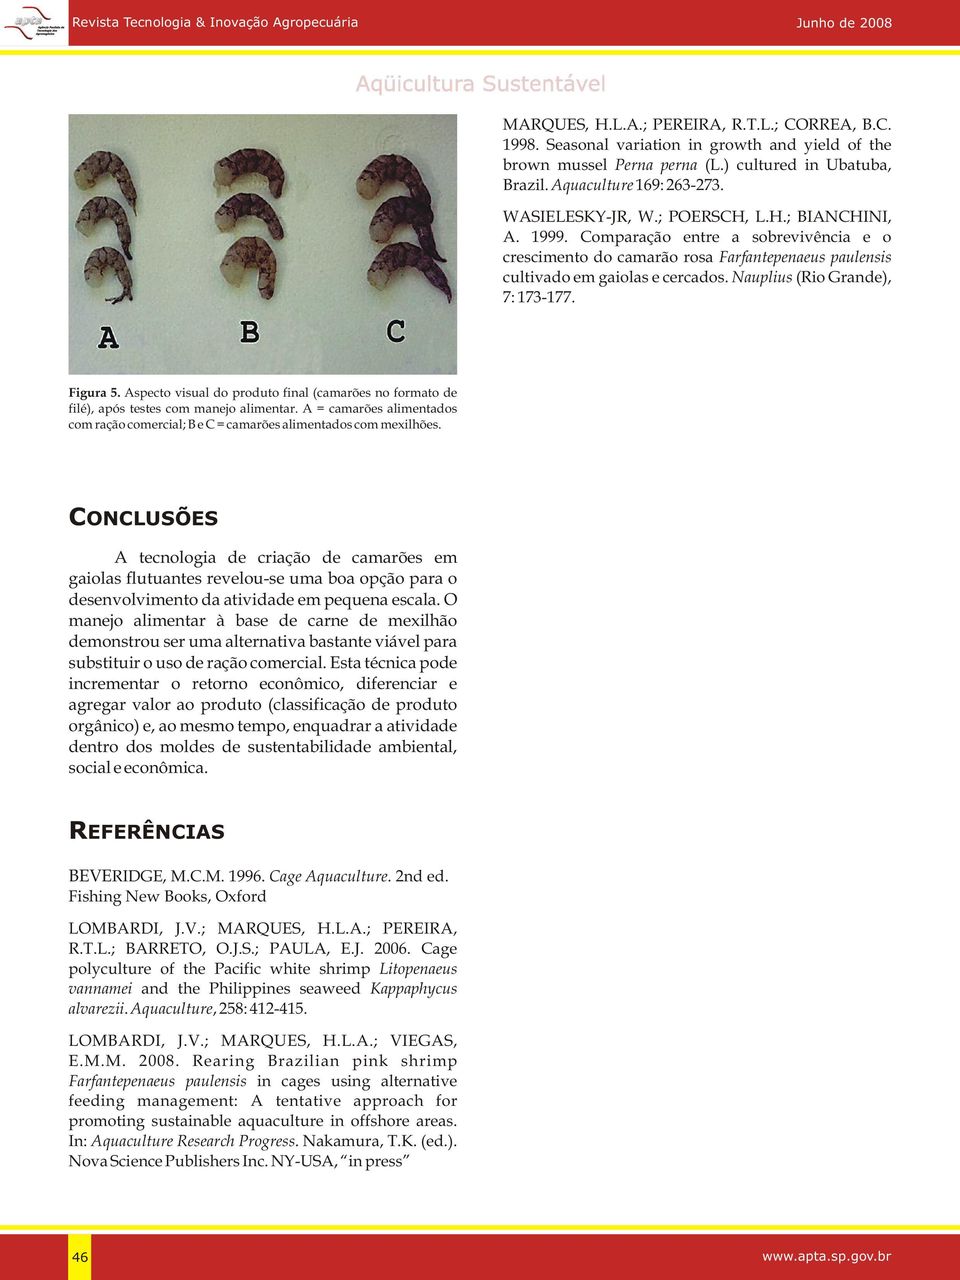 Nauplius (Rio Grande), 7: 173-177. Figura 5. Aspecto visual do produto final (camarões no formato de filé), após testes com manejo alimentar.